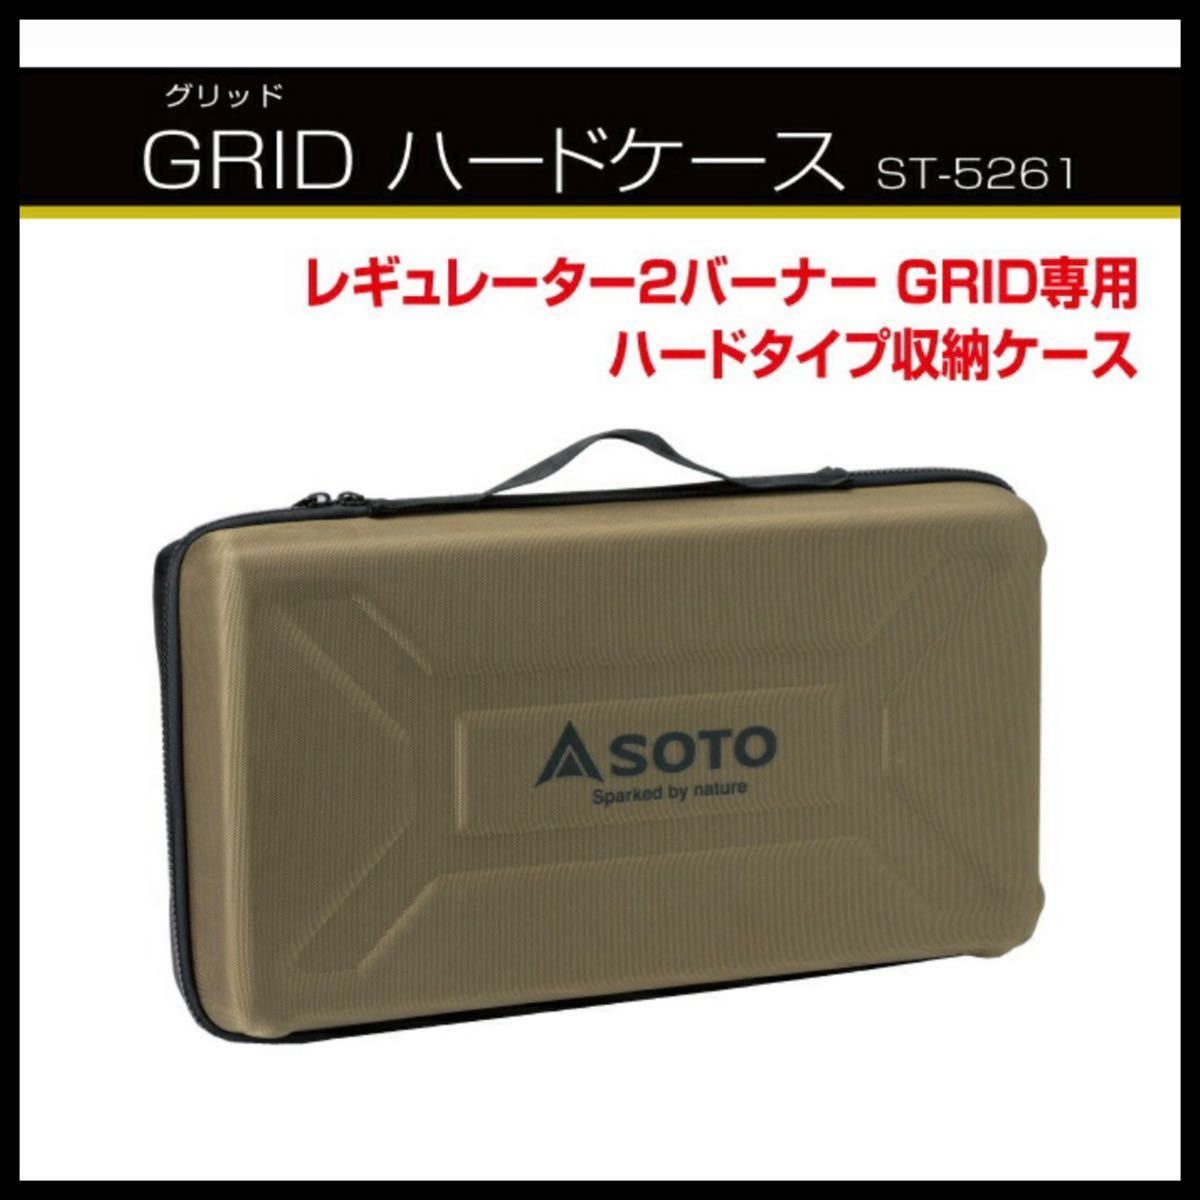 【送料無料】新品 レギュレーター2バーナー GRID ST-526/GRID ハードケース ST-5261 SOTO ツーバーナー